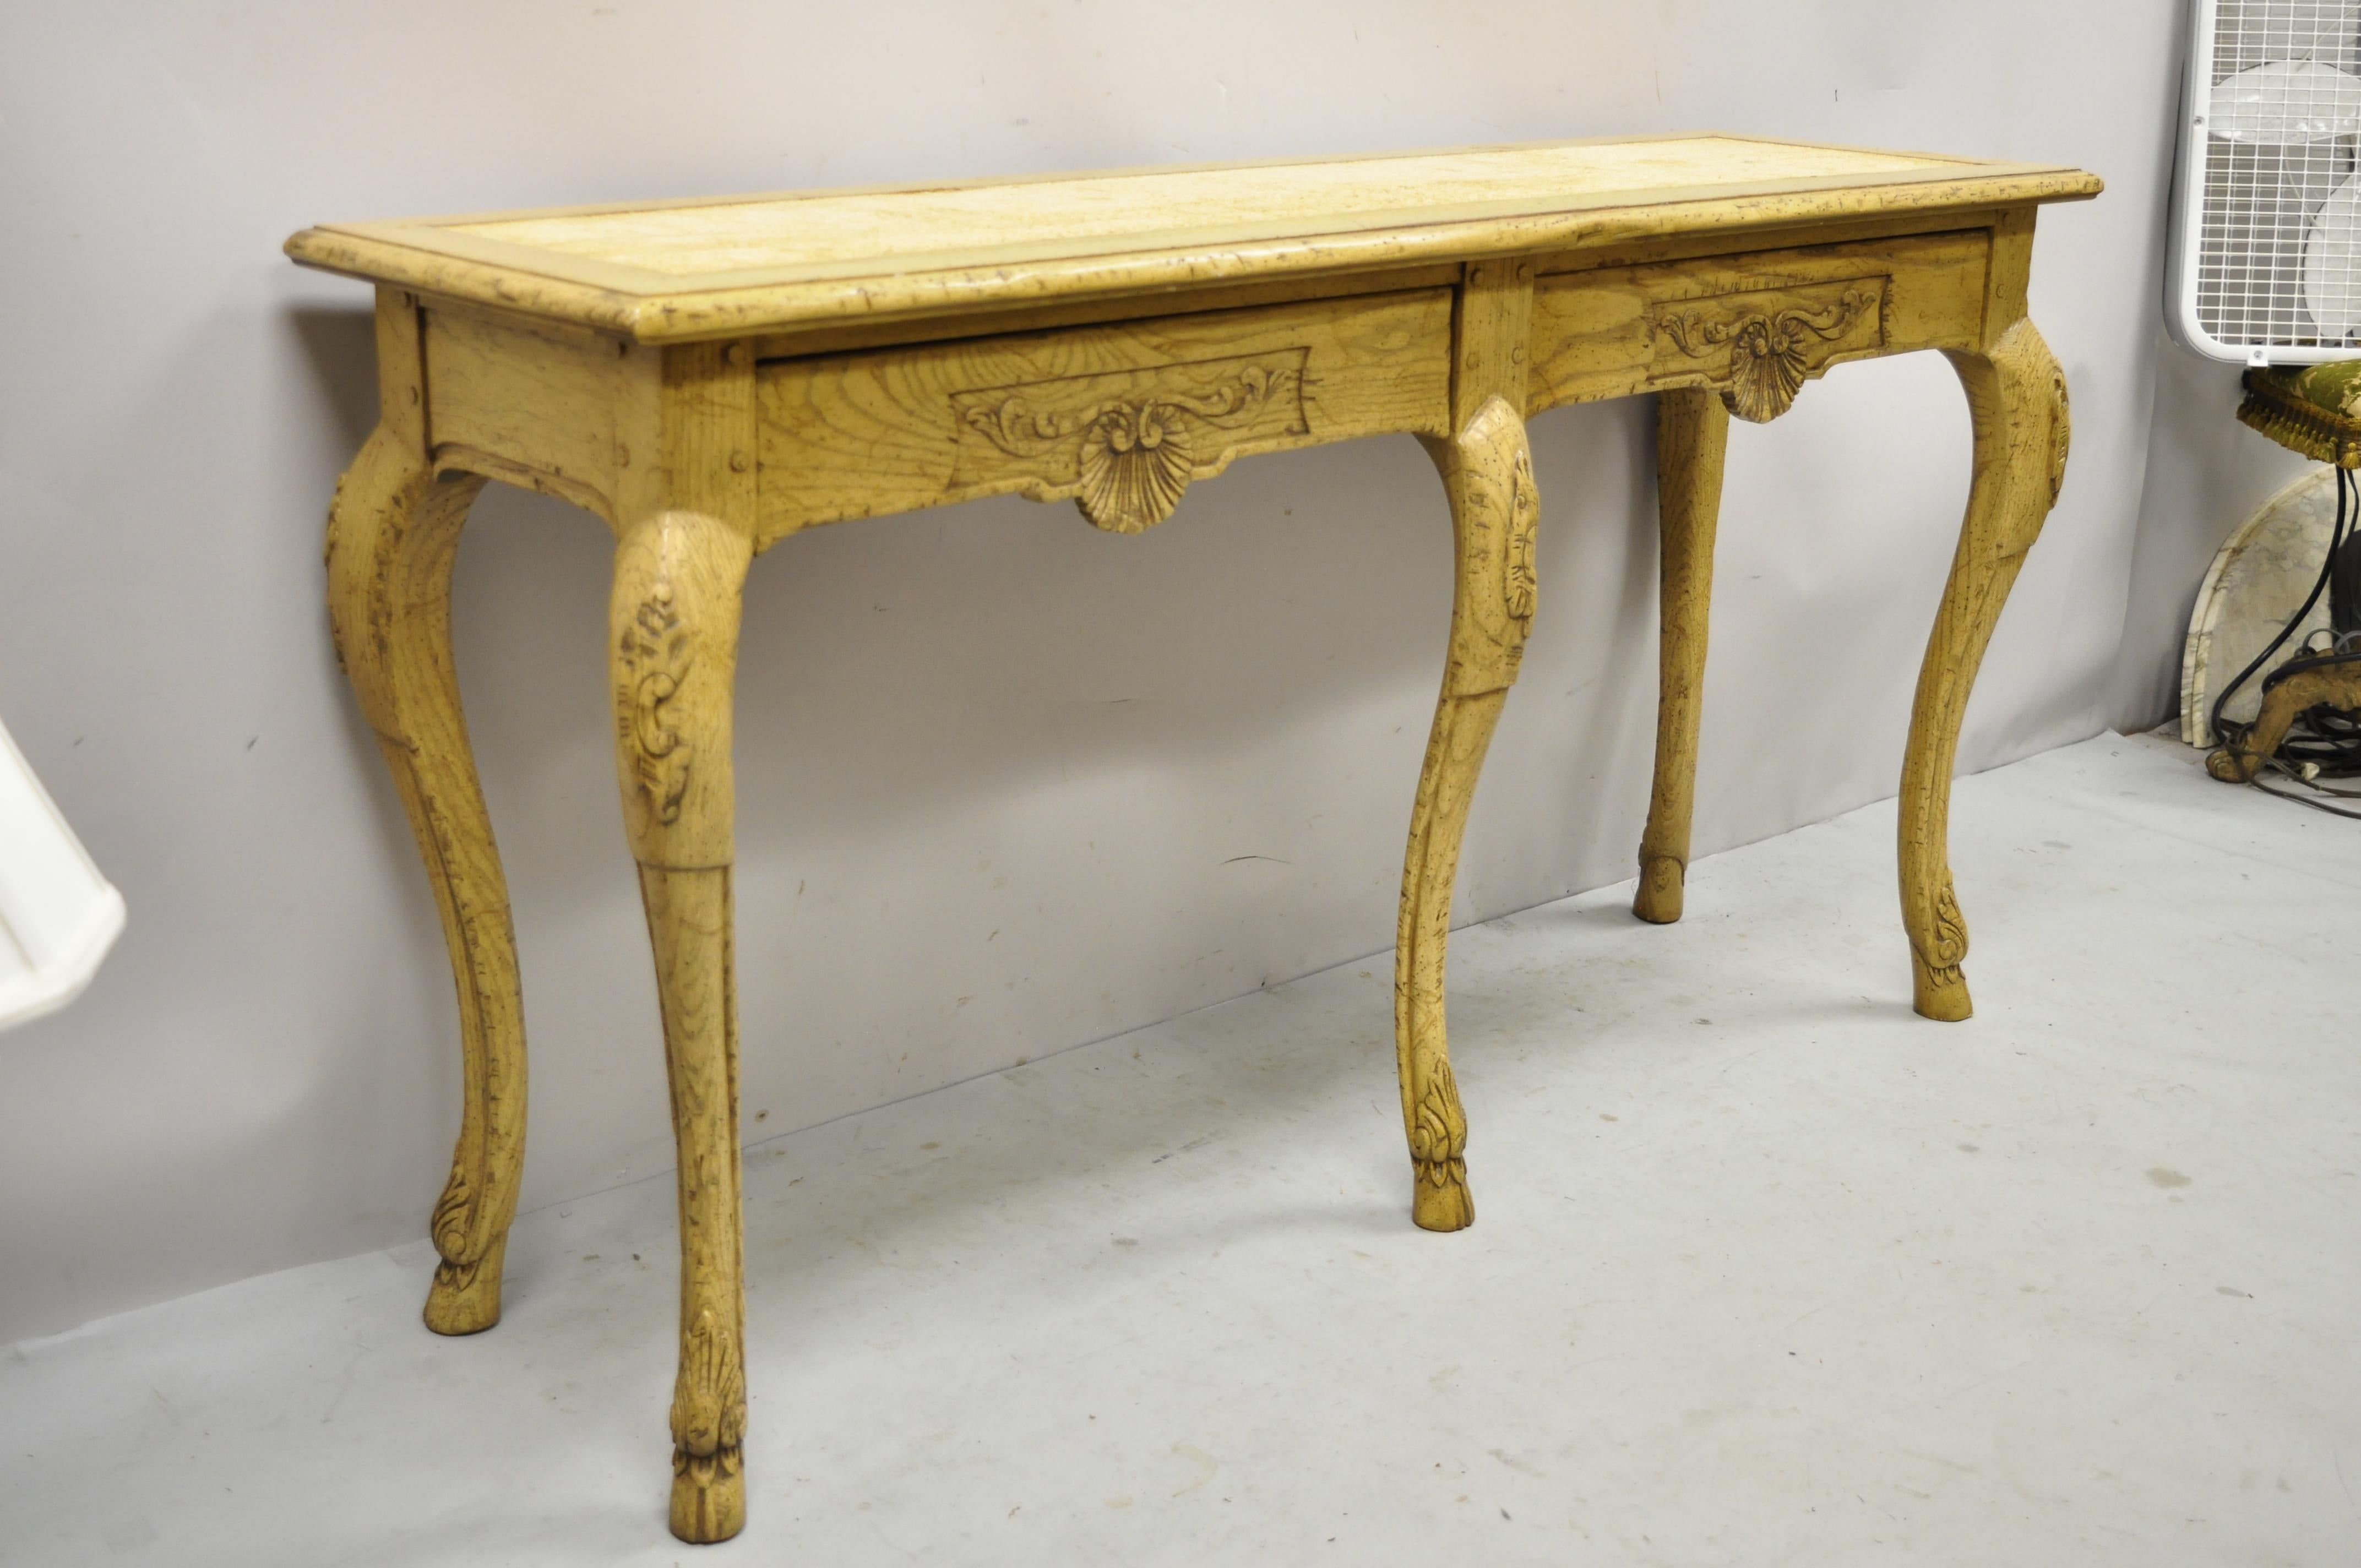 Table de canapé de style Régence italienne, en chêne, avec 2 tiroirs et des pieds en sabot. Cet article présente des pieds en forme de sabots sculptés, un beau grain de bois, une finition vieillie, des détails joliment sculptés, un dos fini, une